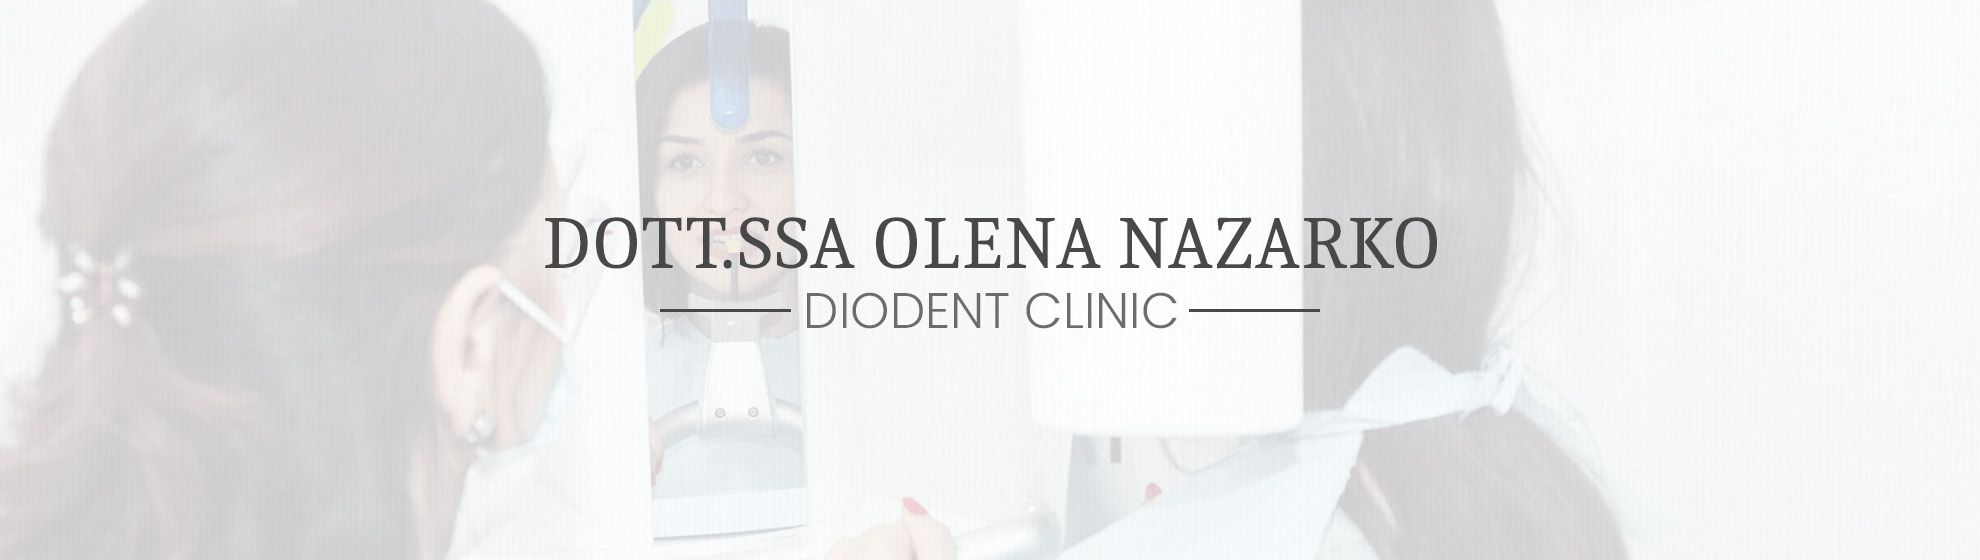 Dott.ssa Olena Nazarko - DioDent Clinic